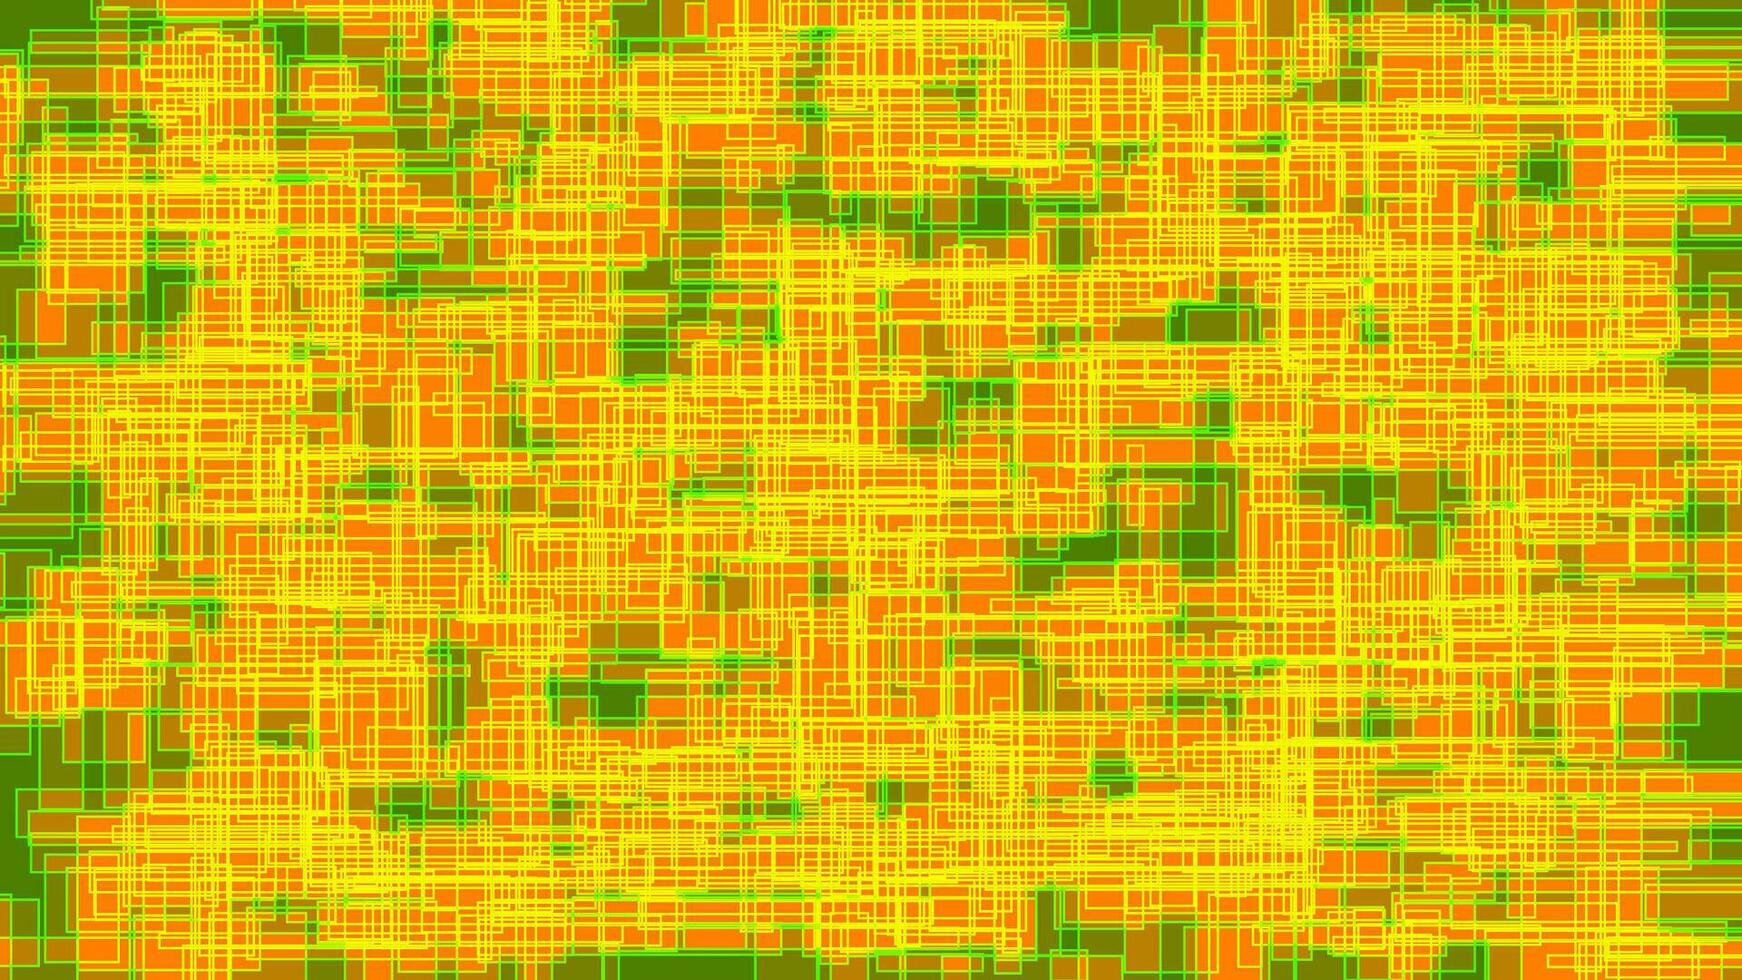 abstrakt geometrisk bakgrund av gul rader och rektanglar på grön bakgrund. vektor illustration.